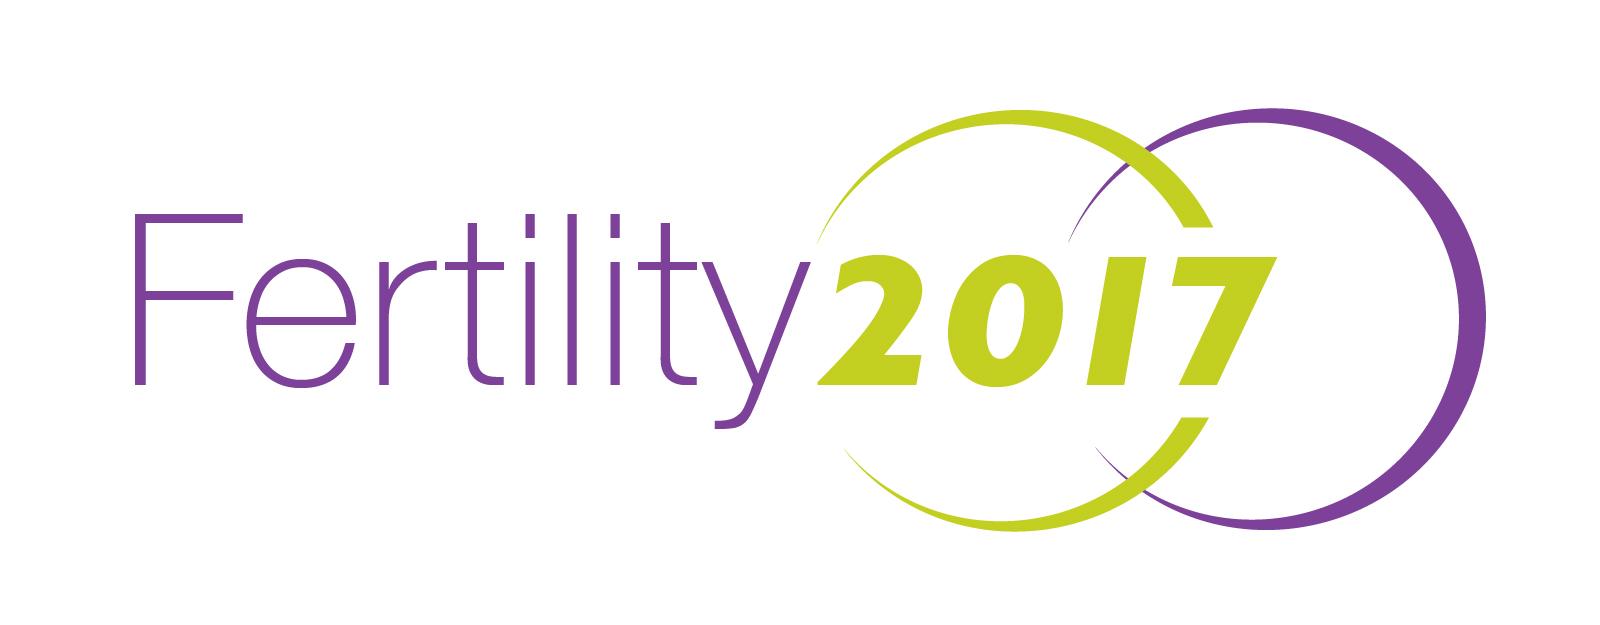 2017 Logo - Fertility 2017